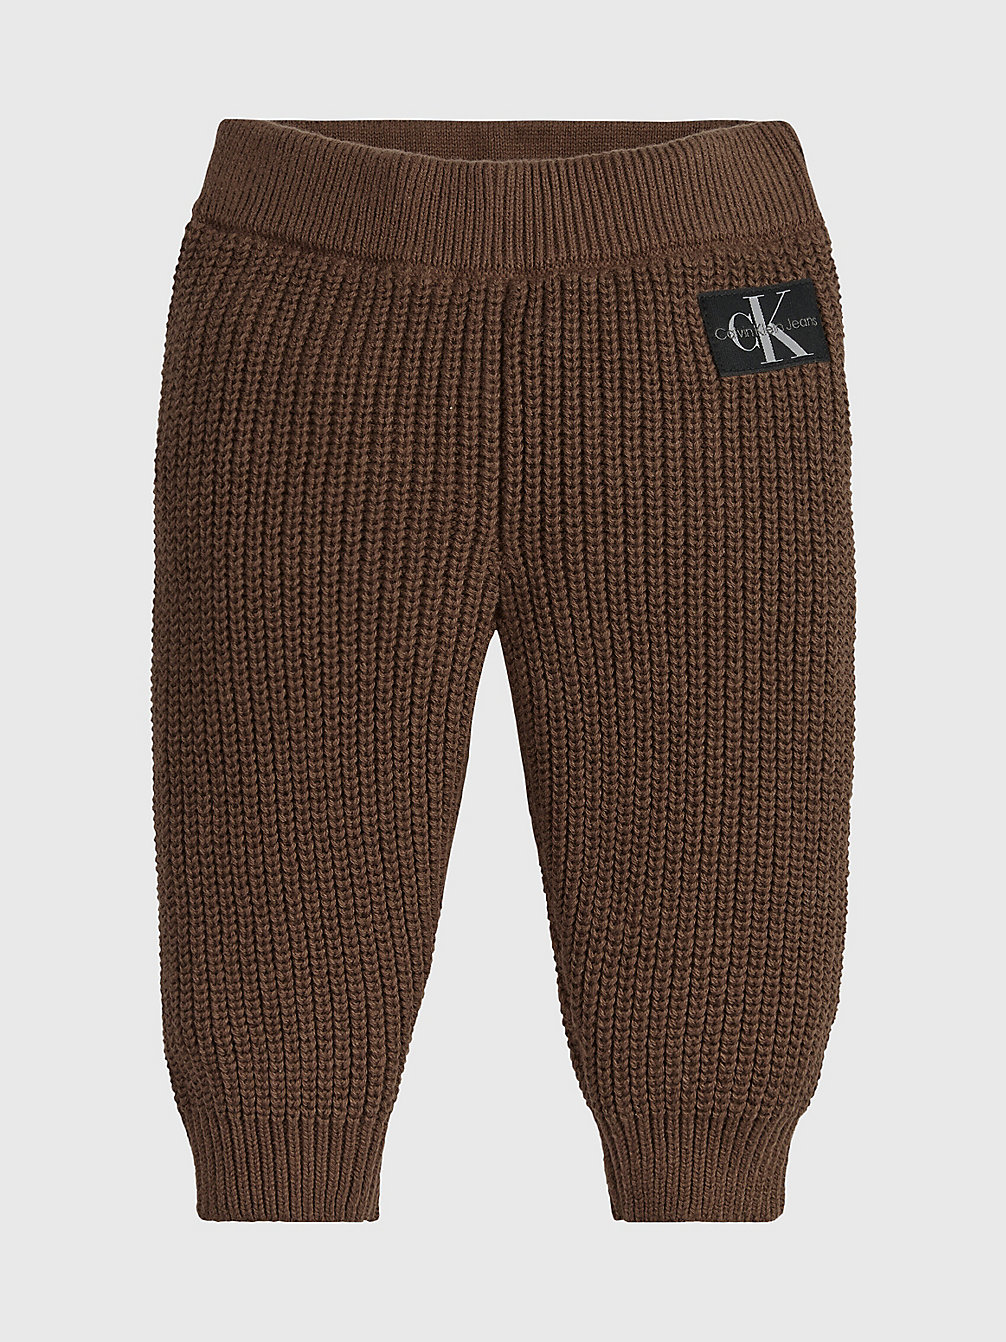 MILK CHOCOLATE Pantalon De Jogging En Maille Pour Nouveau-Né undefined newborn Calvin Klein